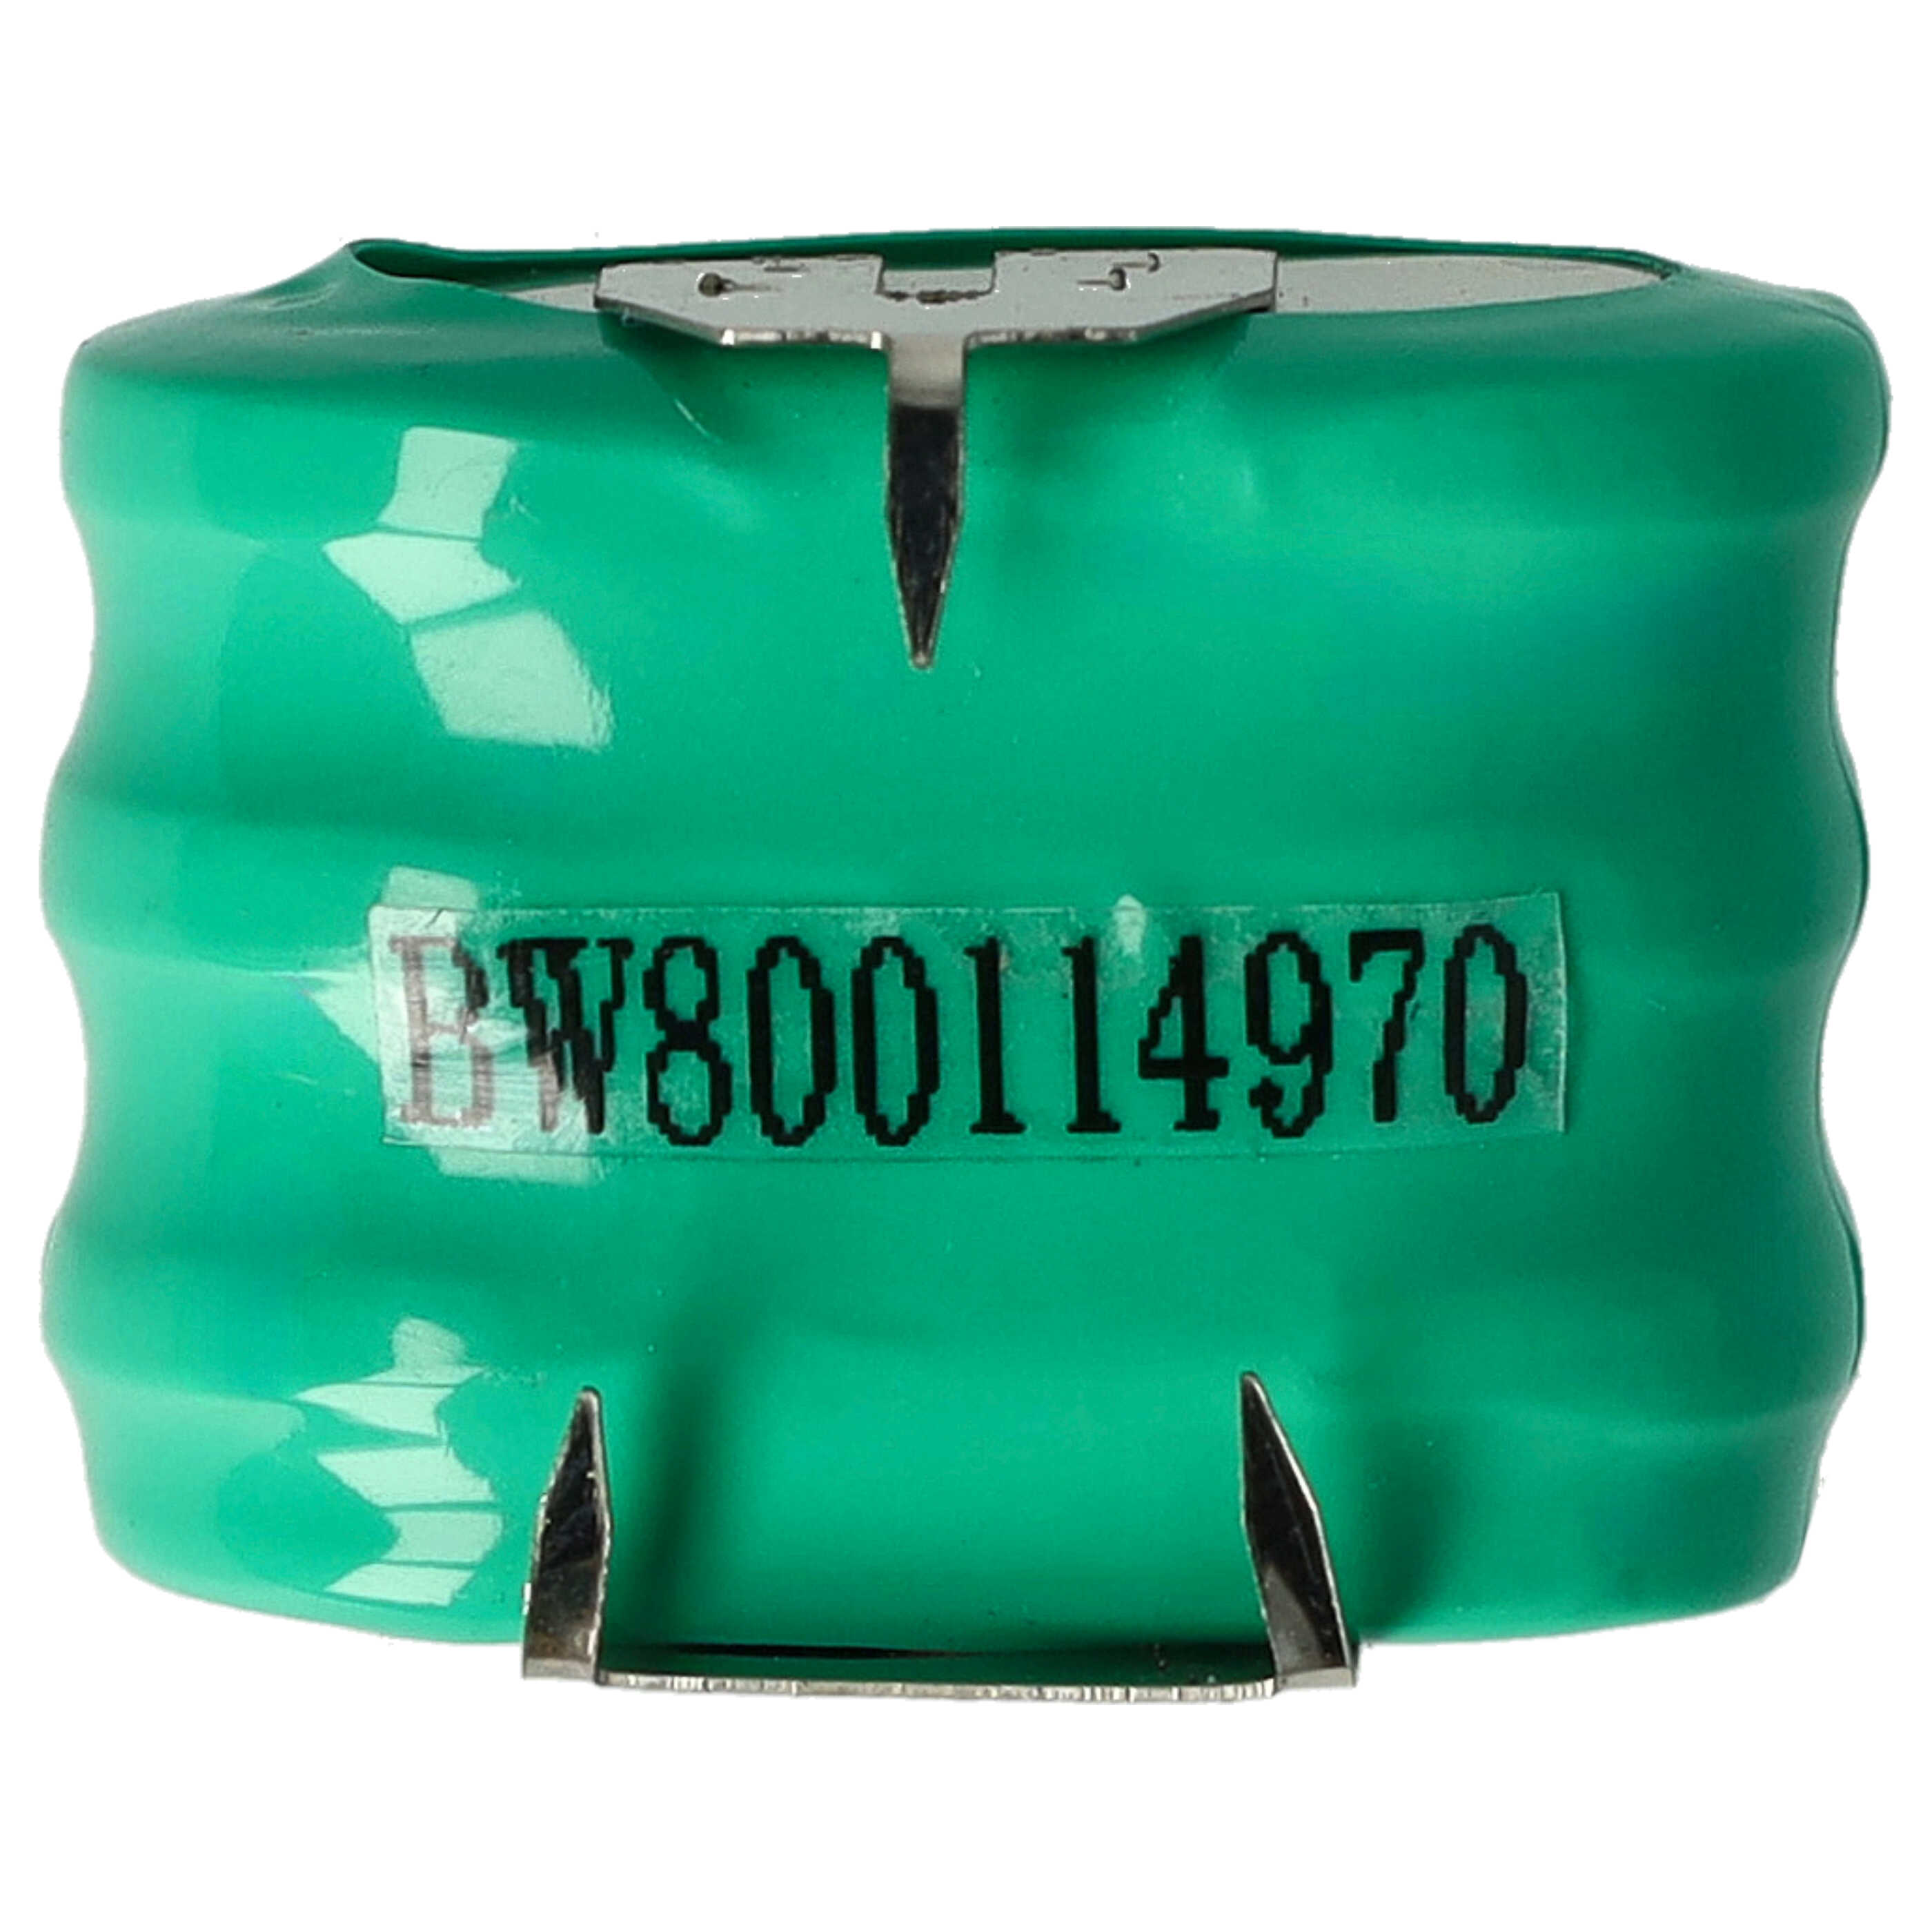 Batteria a bottone (3x cella) tipo 3/V150H 3 pin sostituisce 3/V150H per modellismo, luci solari ecc. 